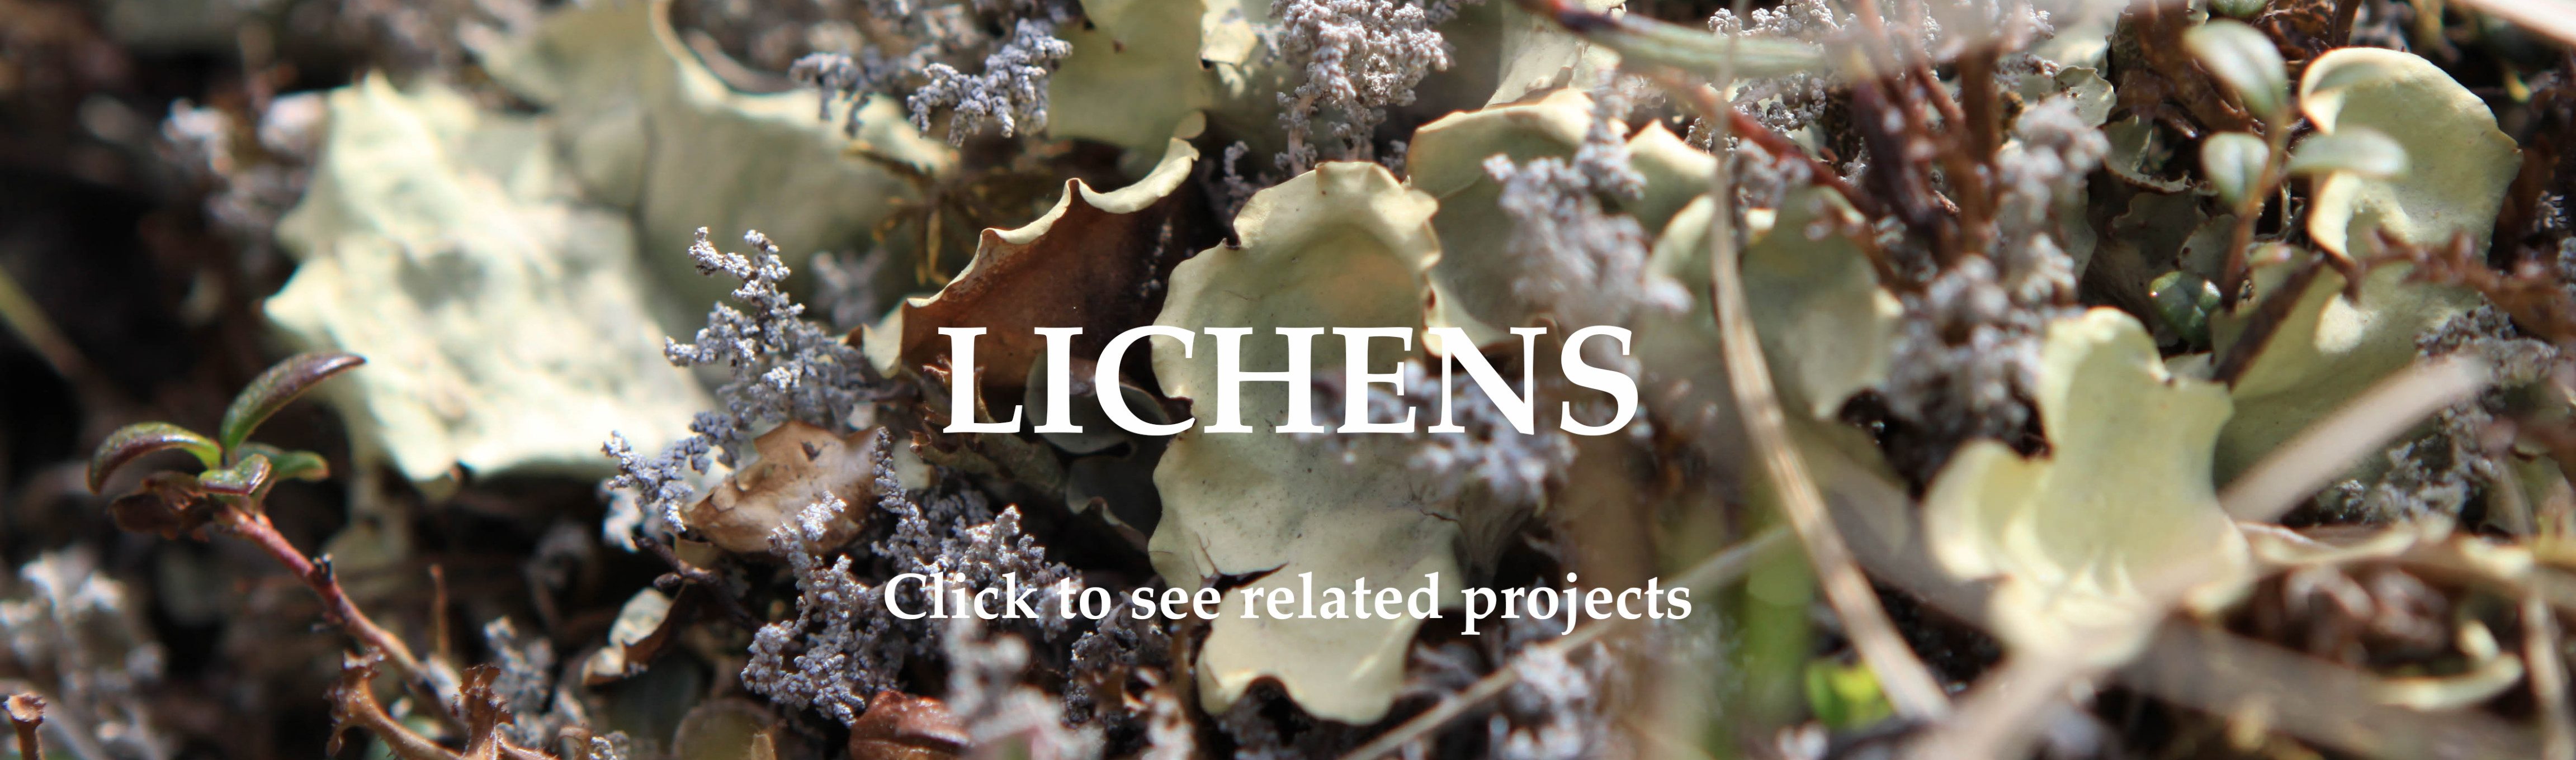 researxh-lichens